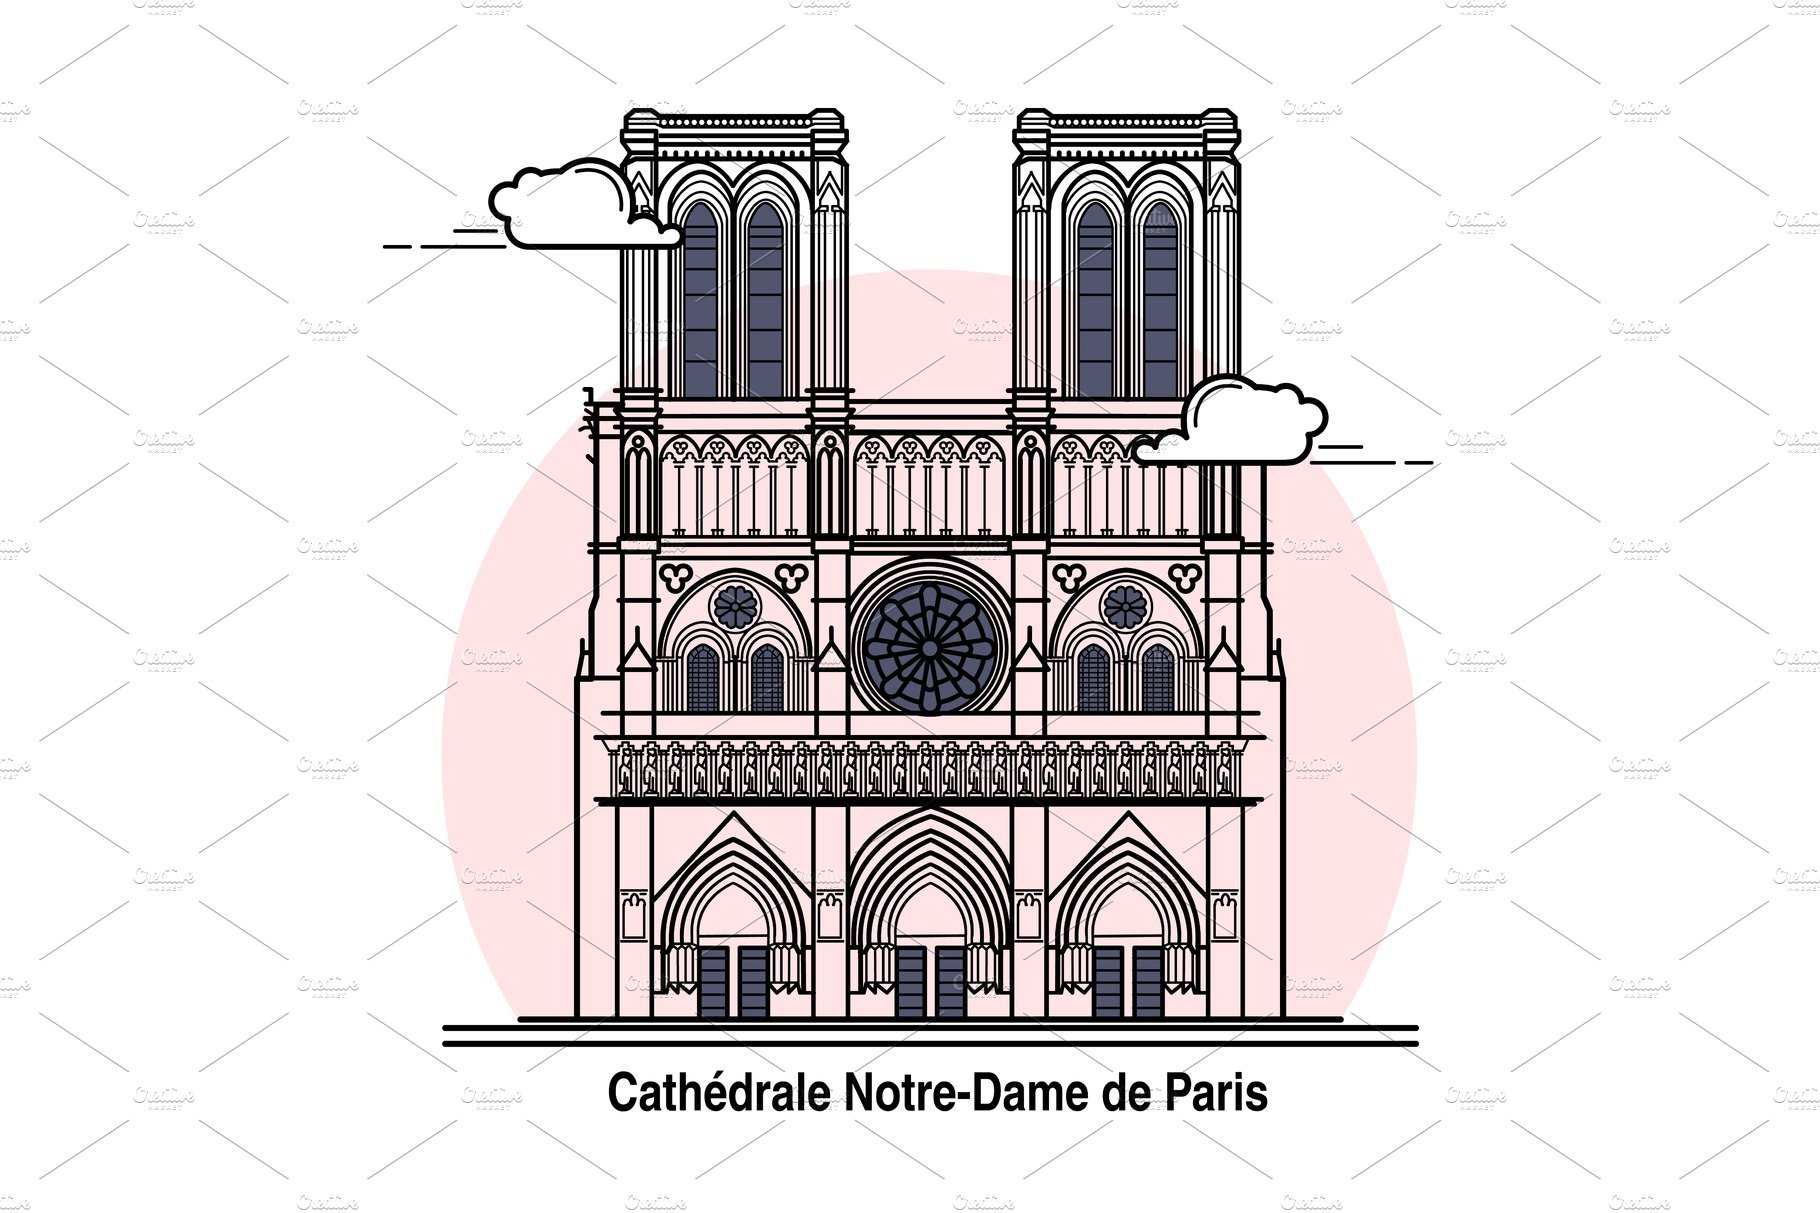 Notre-Dame de Paris Card cover image.